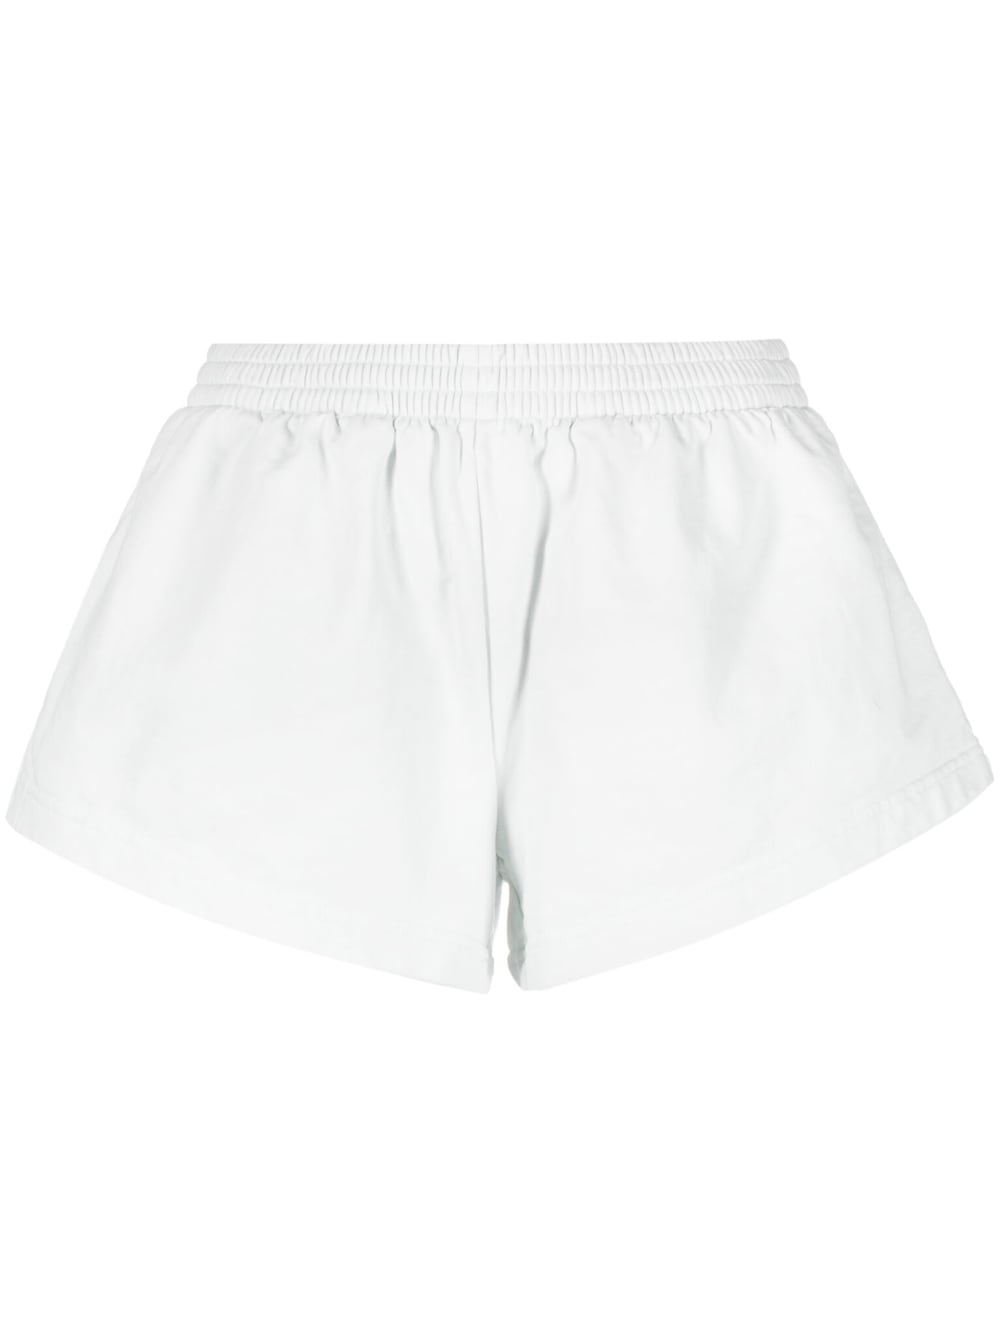 Balenciaga Shorts White